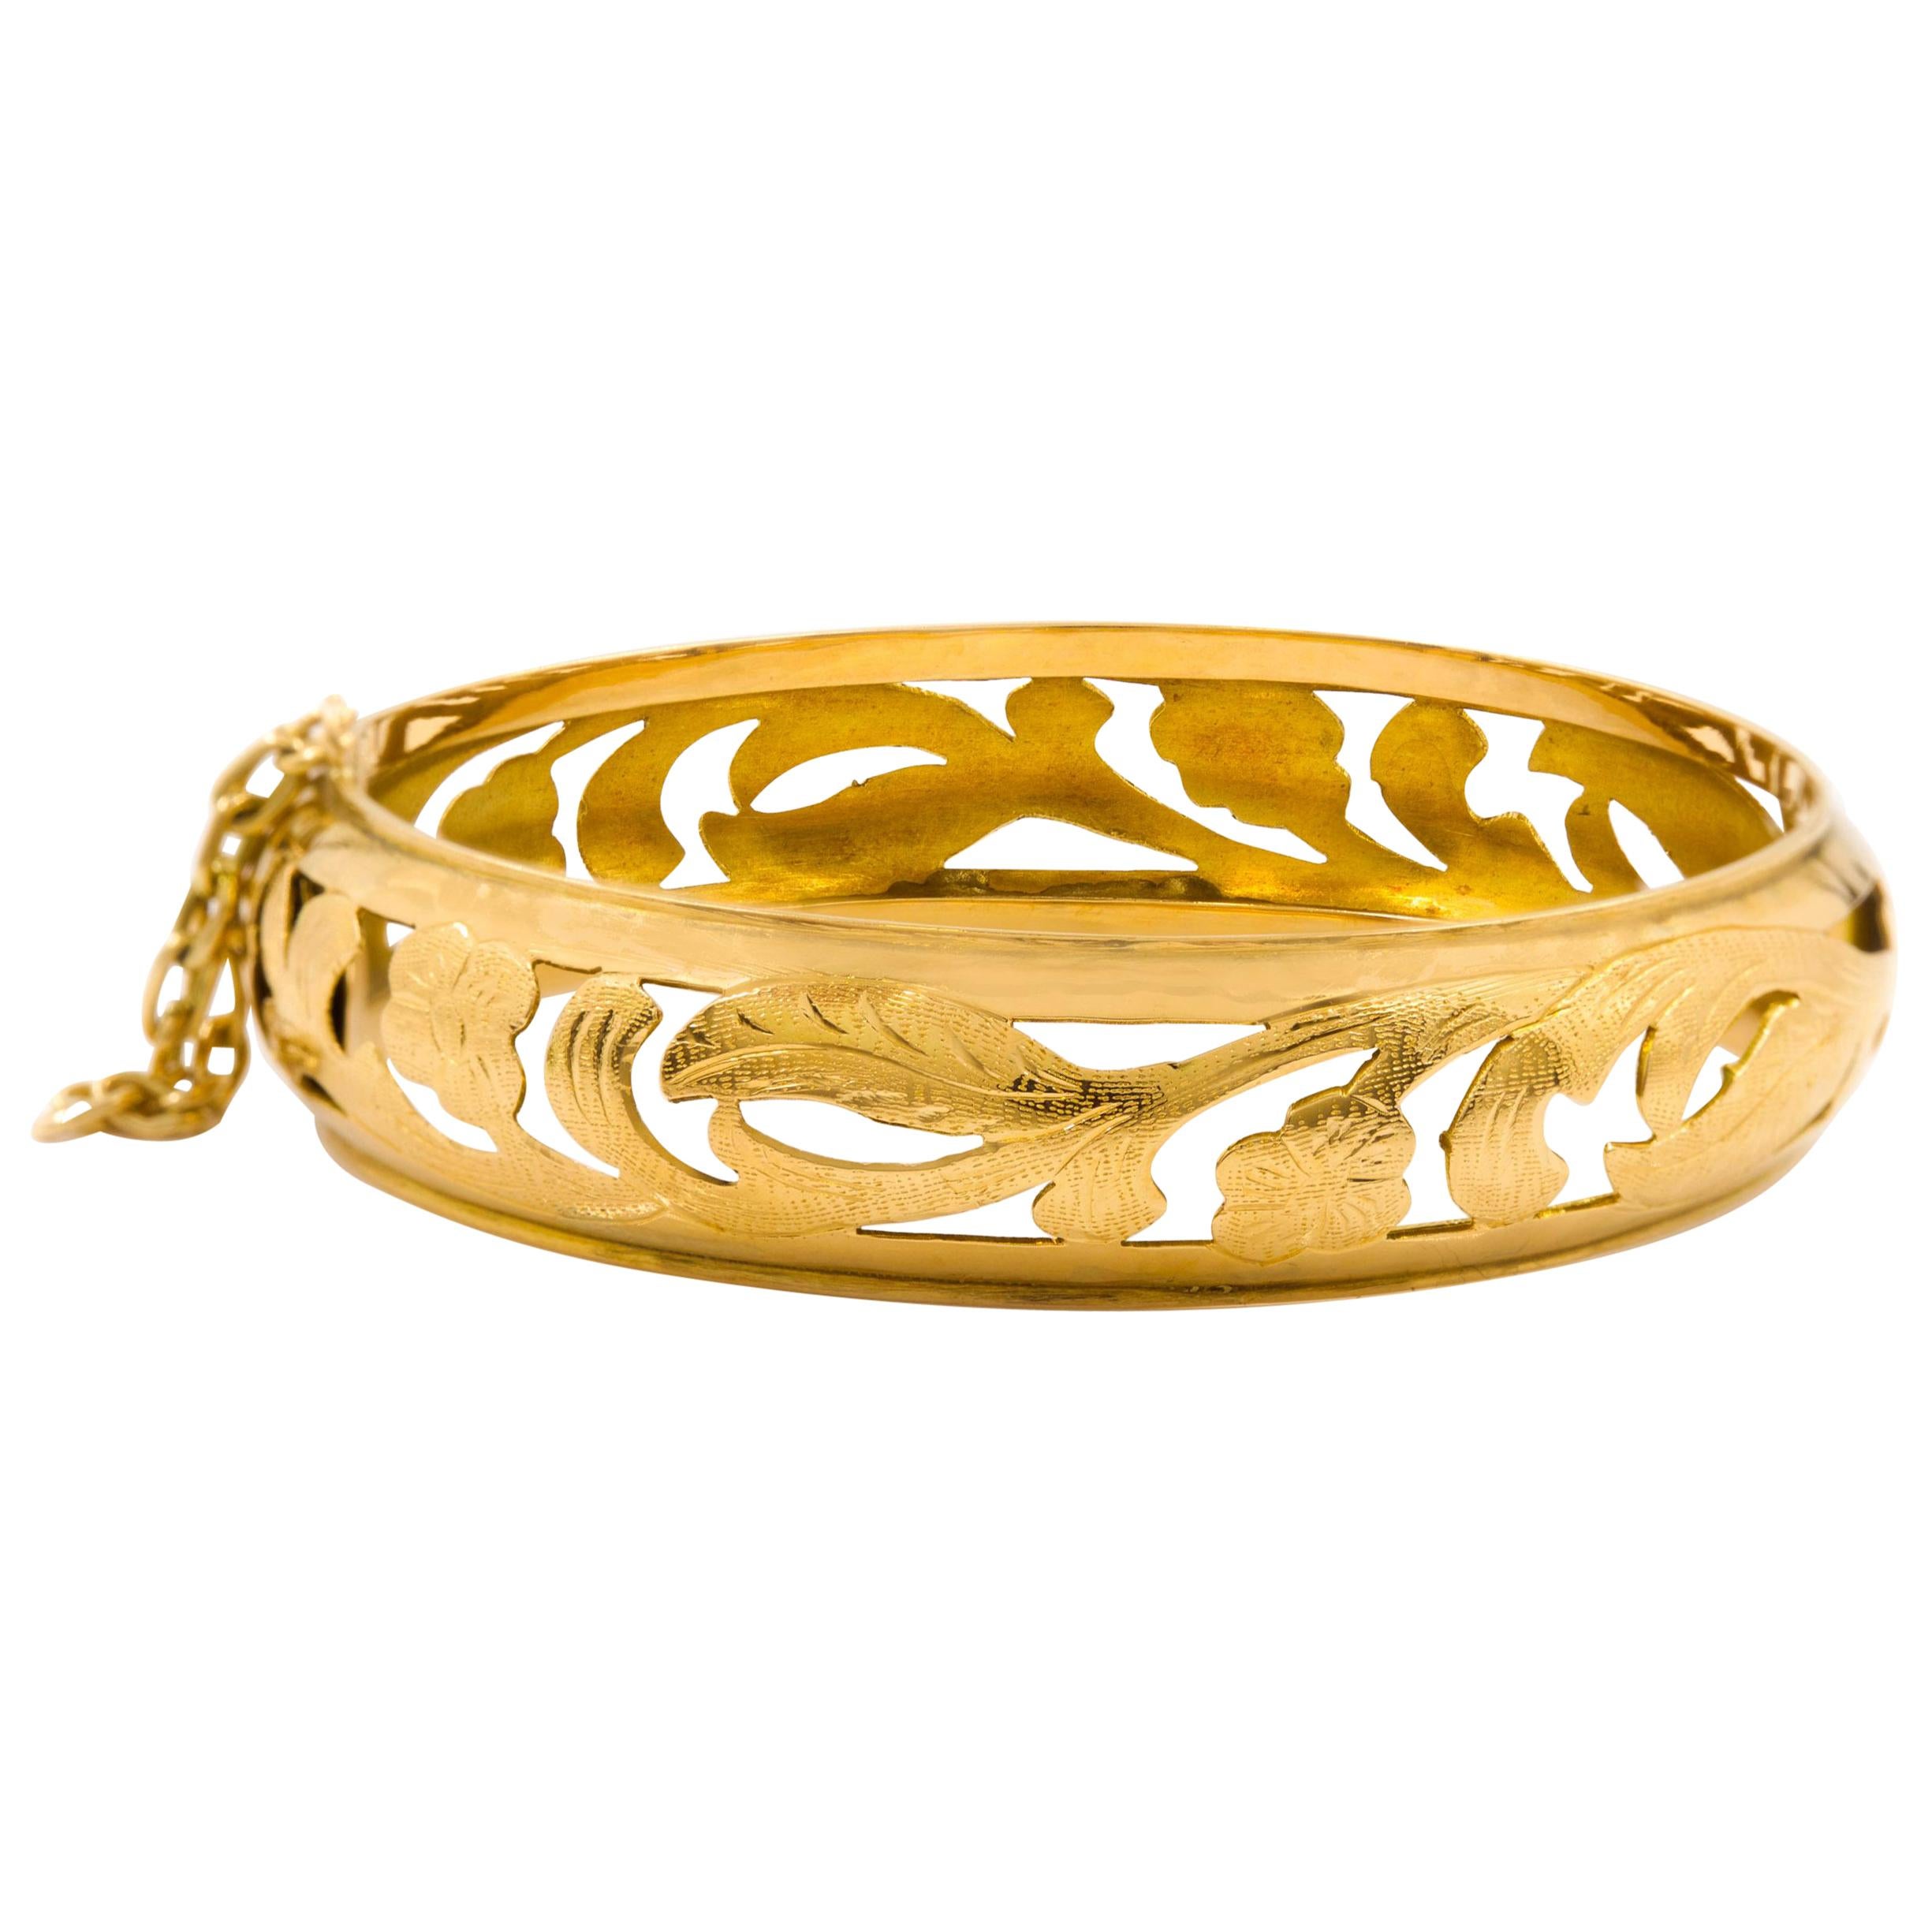 Antique Art Nouveau 14k Yellow Gold Engraved Bangle Bracelet